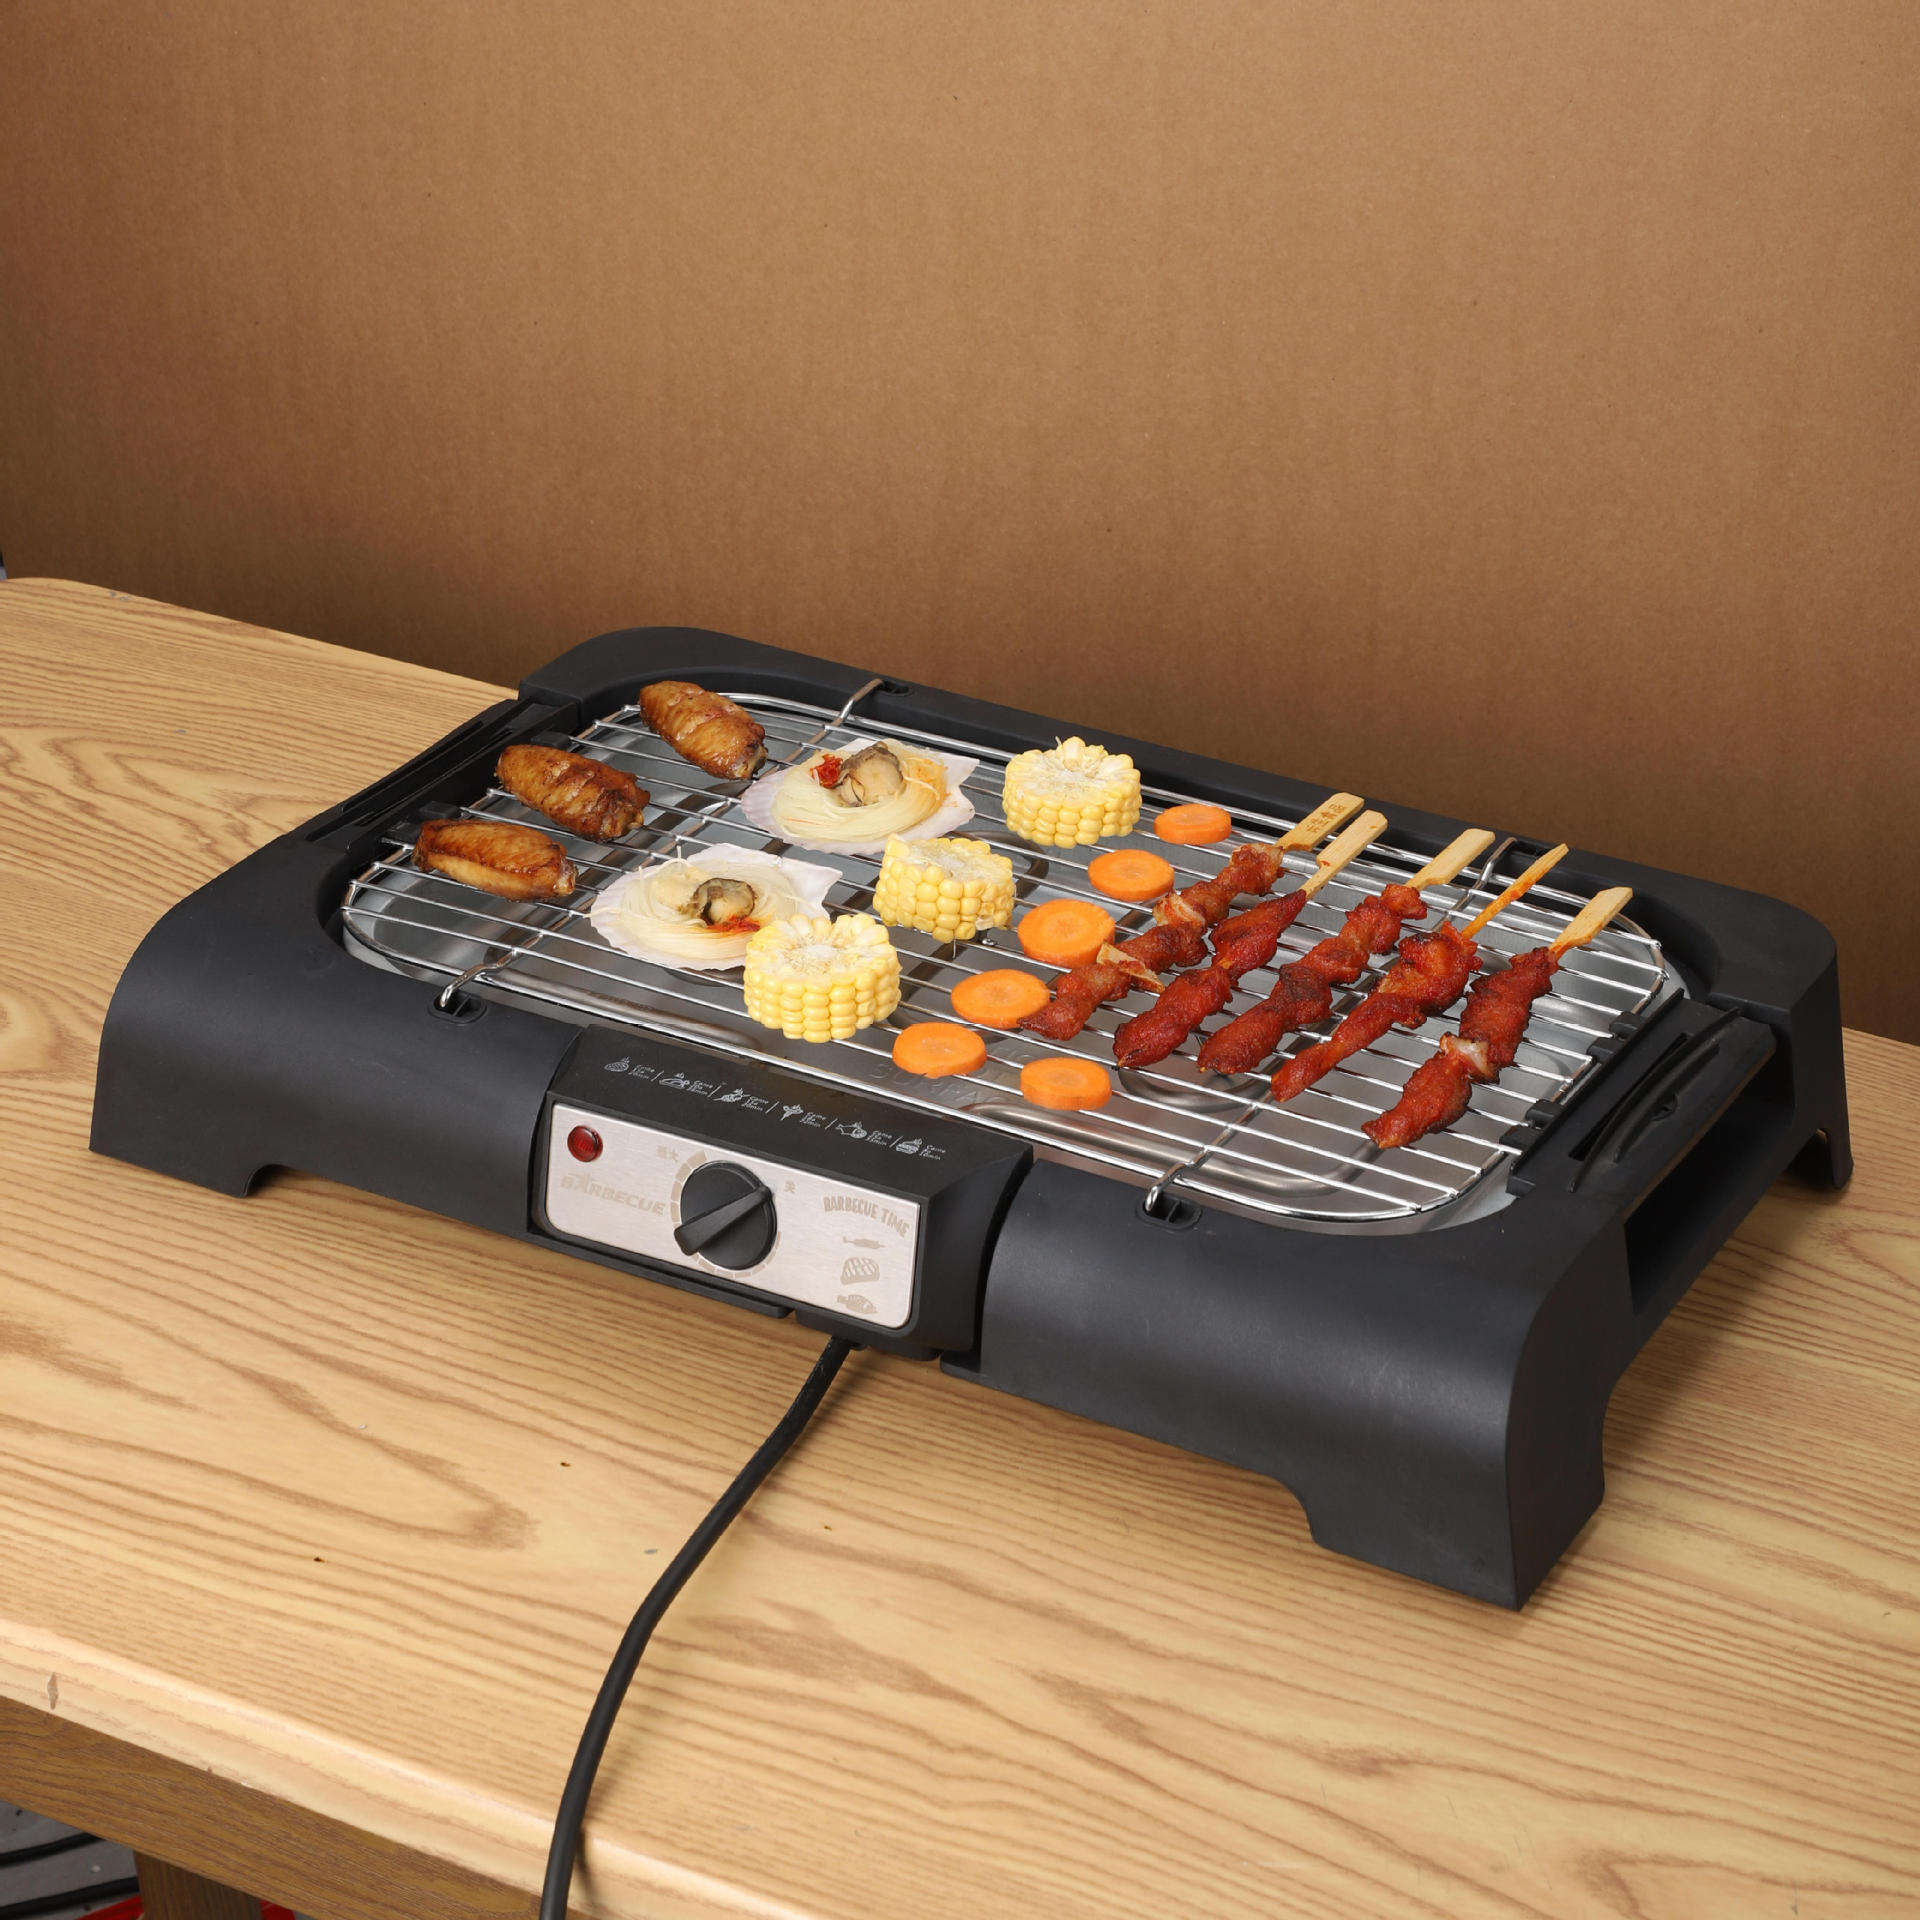 电烧烤炉家用烤肉炉烧烤用具无烟电烤盘室内烧烤架韩式烤串电烤炉